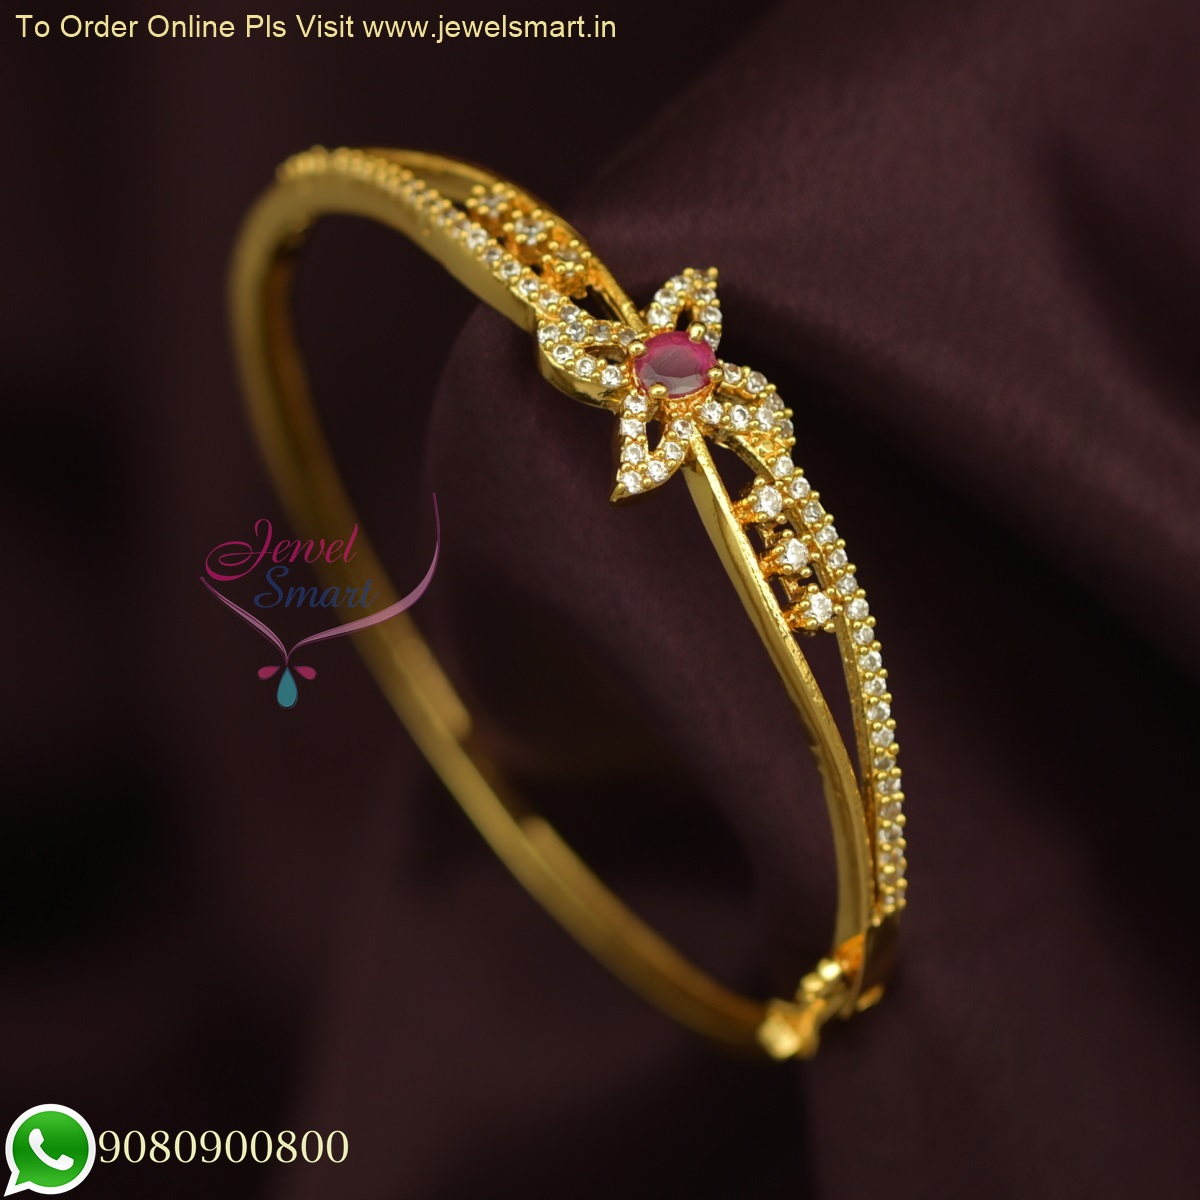 Branch (2) - 21 carat gold bracelet and ring, weight 12.05 grams - مصاغات  الأربش للذهب بالسعودية قسم المتجر الإلكتروني